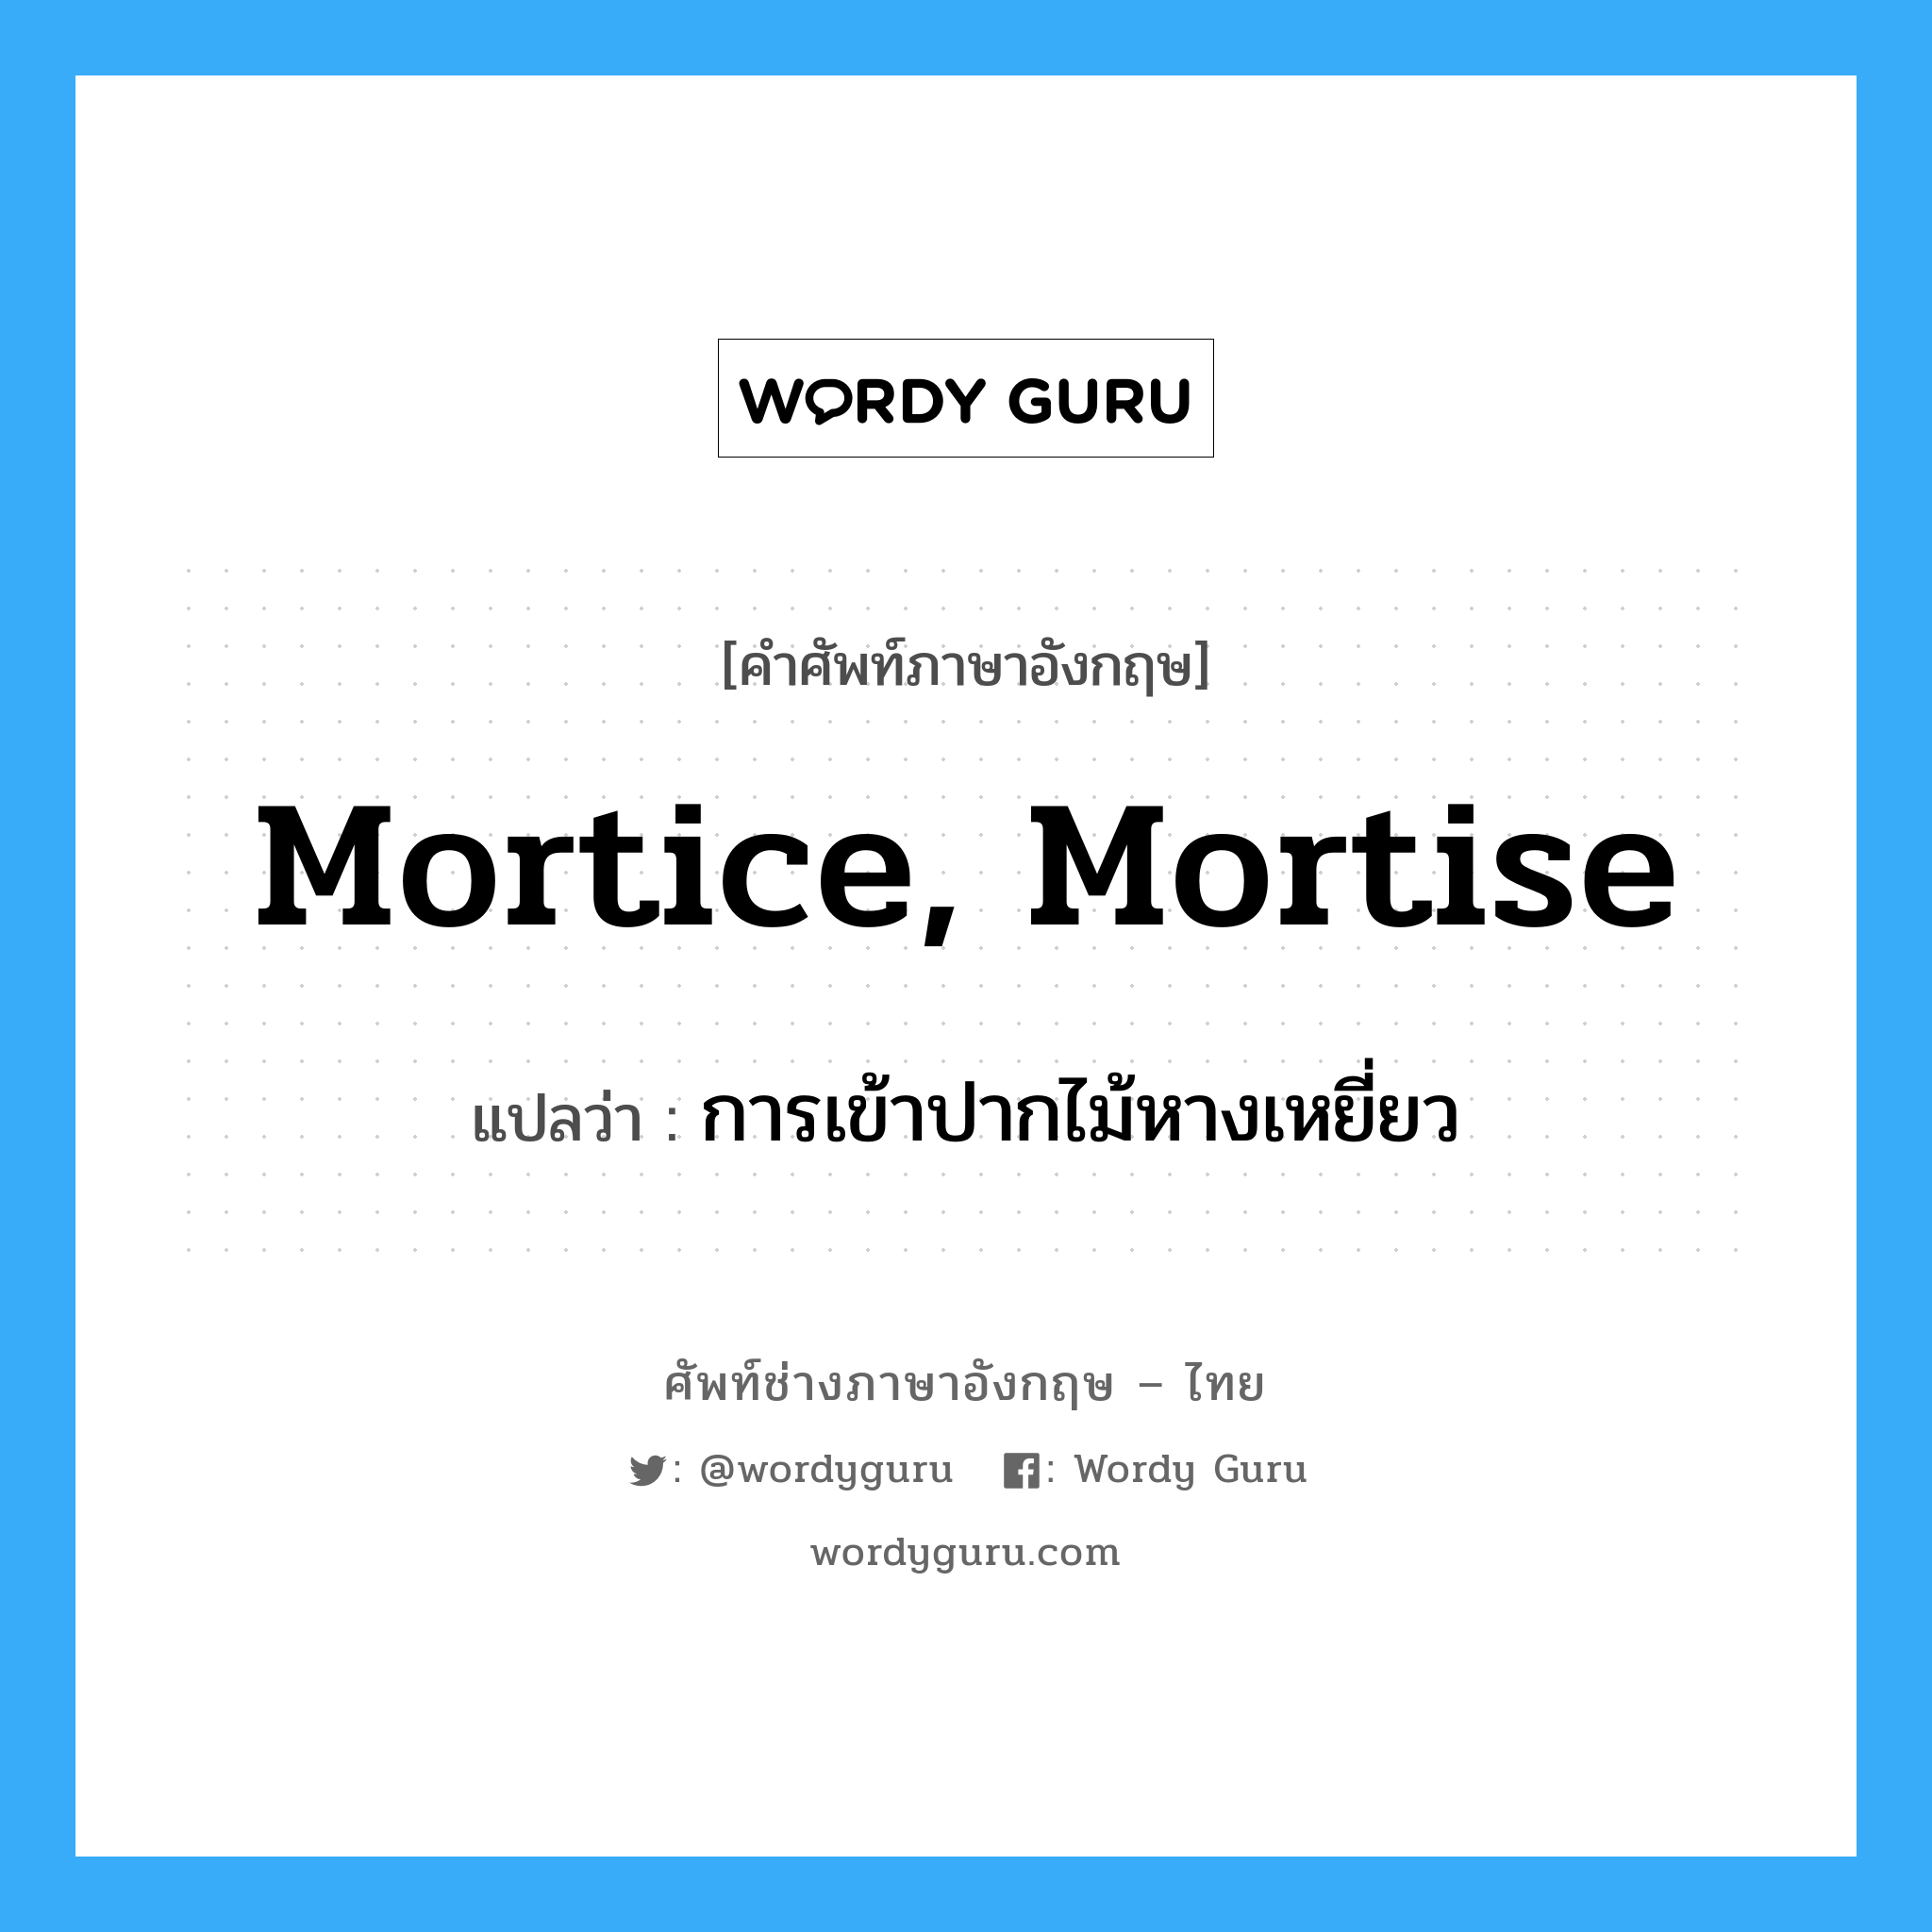 การเข้าปากไม้หางเหยี่ยว ภาษาอังกฤษ?, คำศัพท์ช่างภาษาอังกฤษ - ไทย การเข้าปากไม้หางเหยี่ยว คำศัพท์ภาษาอังกฤษ การเข้าปากไม้หางเหยี่ยว แปลว่า mortice, mortise